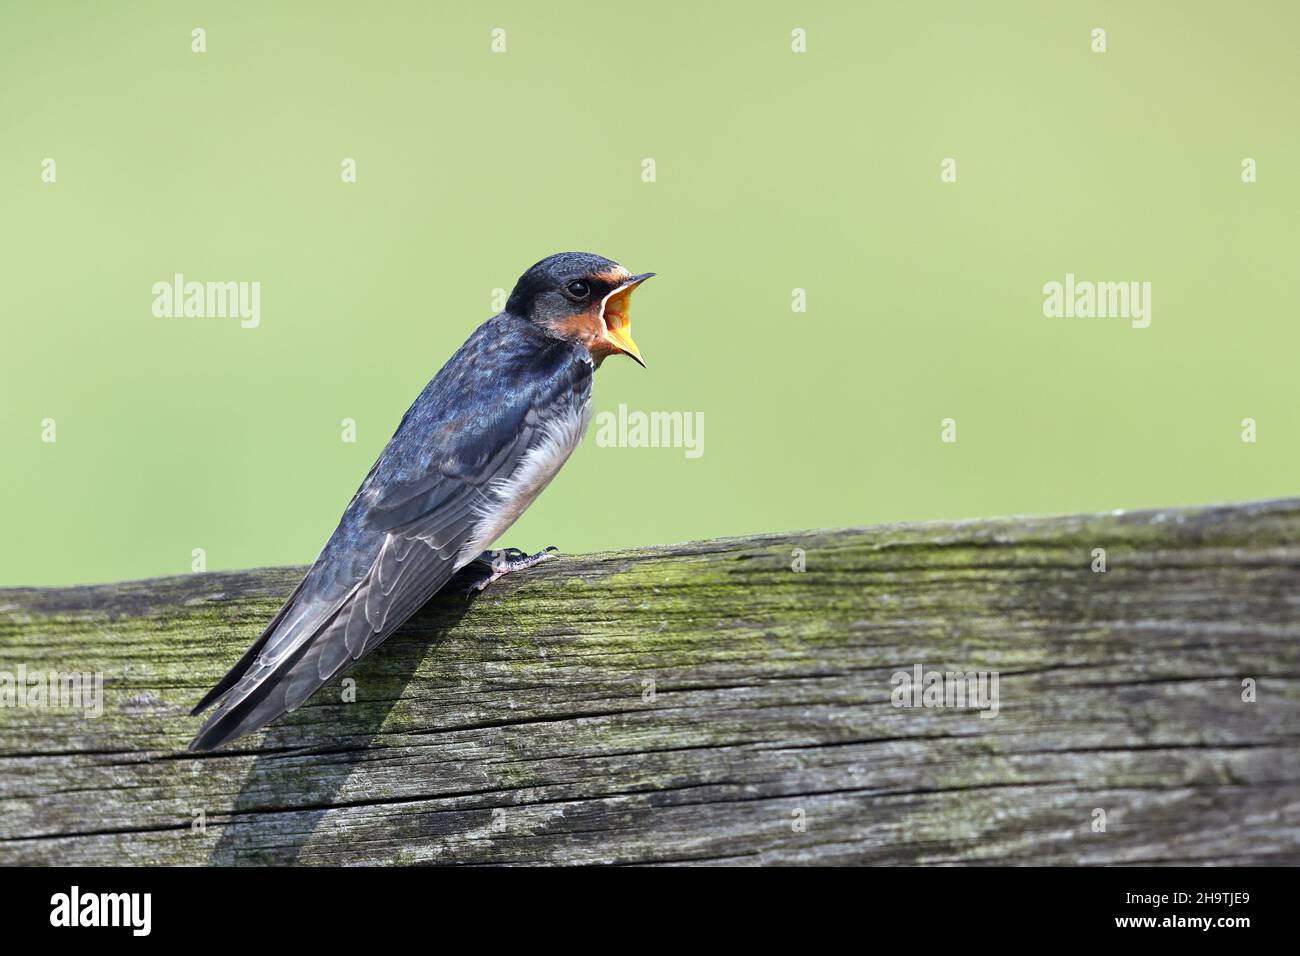 Granero de la traga (Hirundo rustica), pájaro joven completamente hecho que pide comida en una cerca, Países Bajos, Frisia Foto de stock